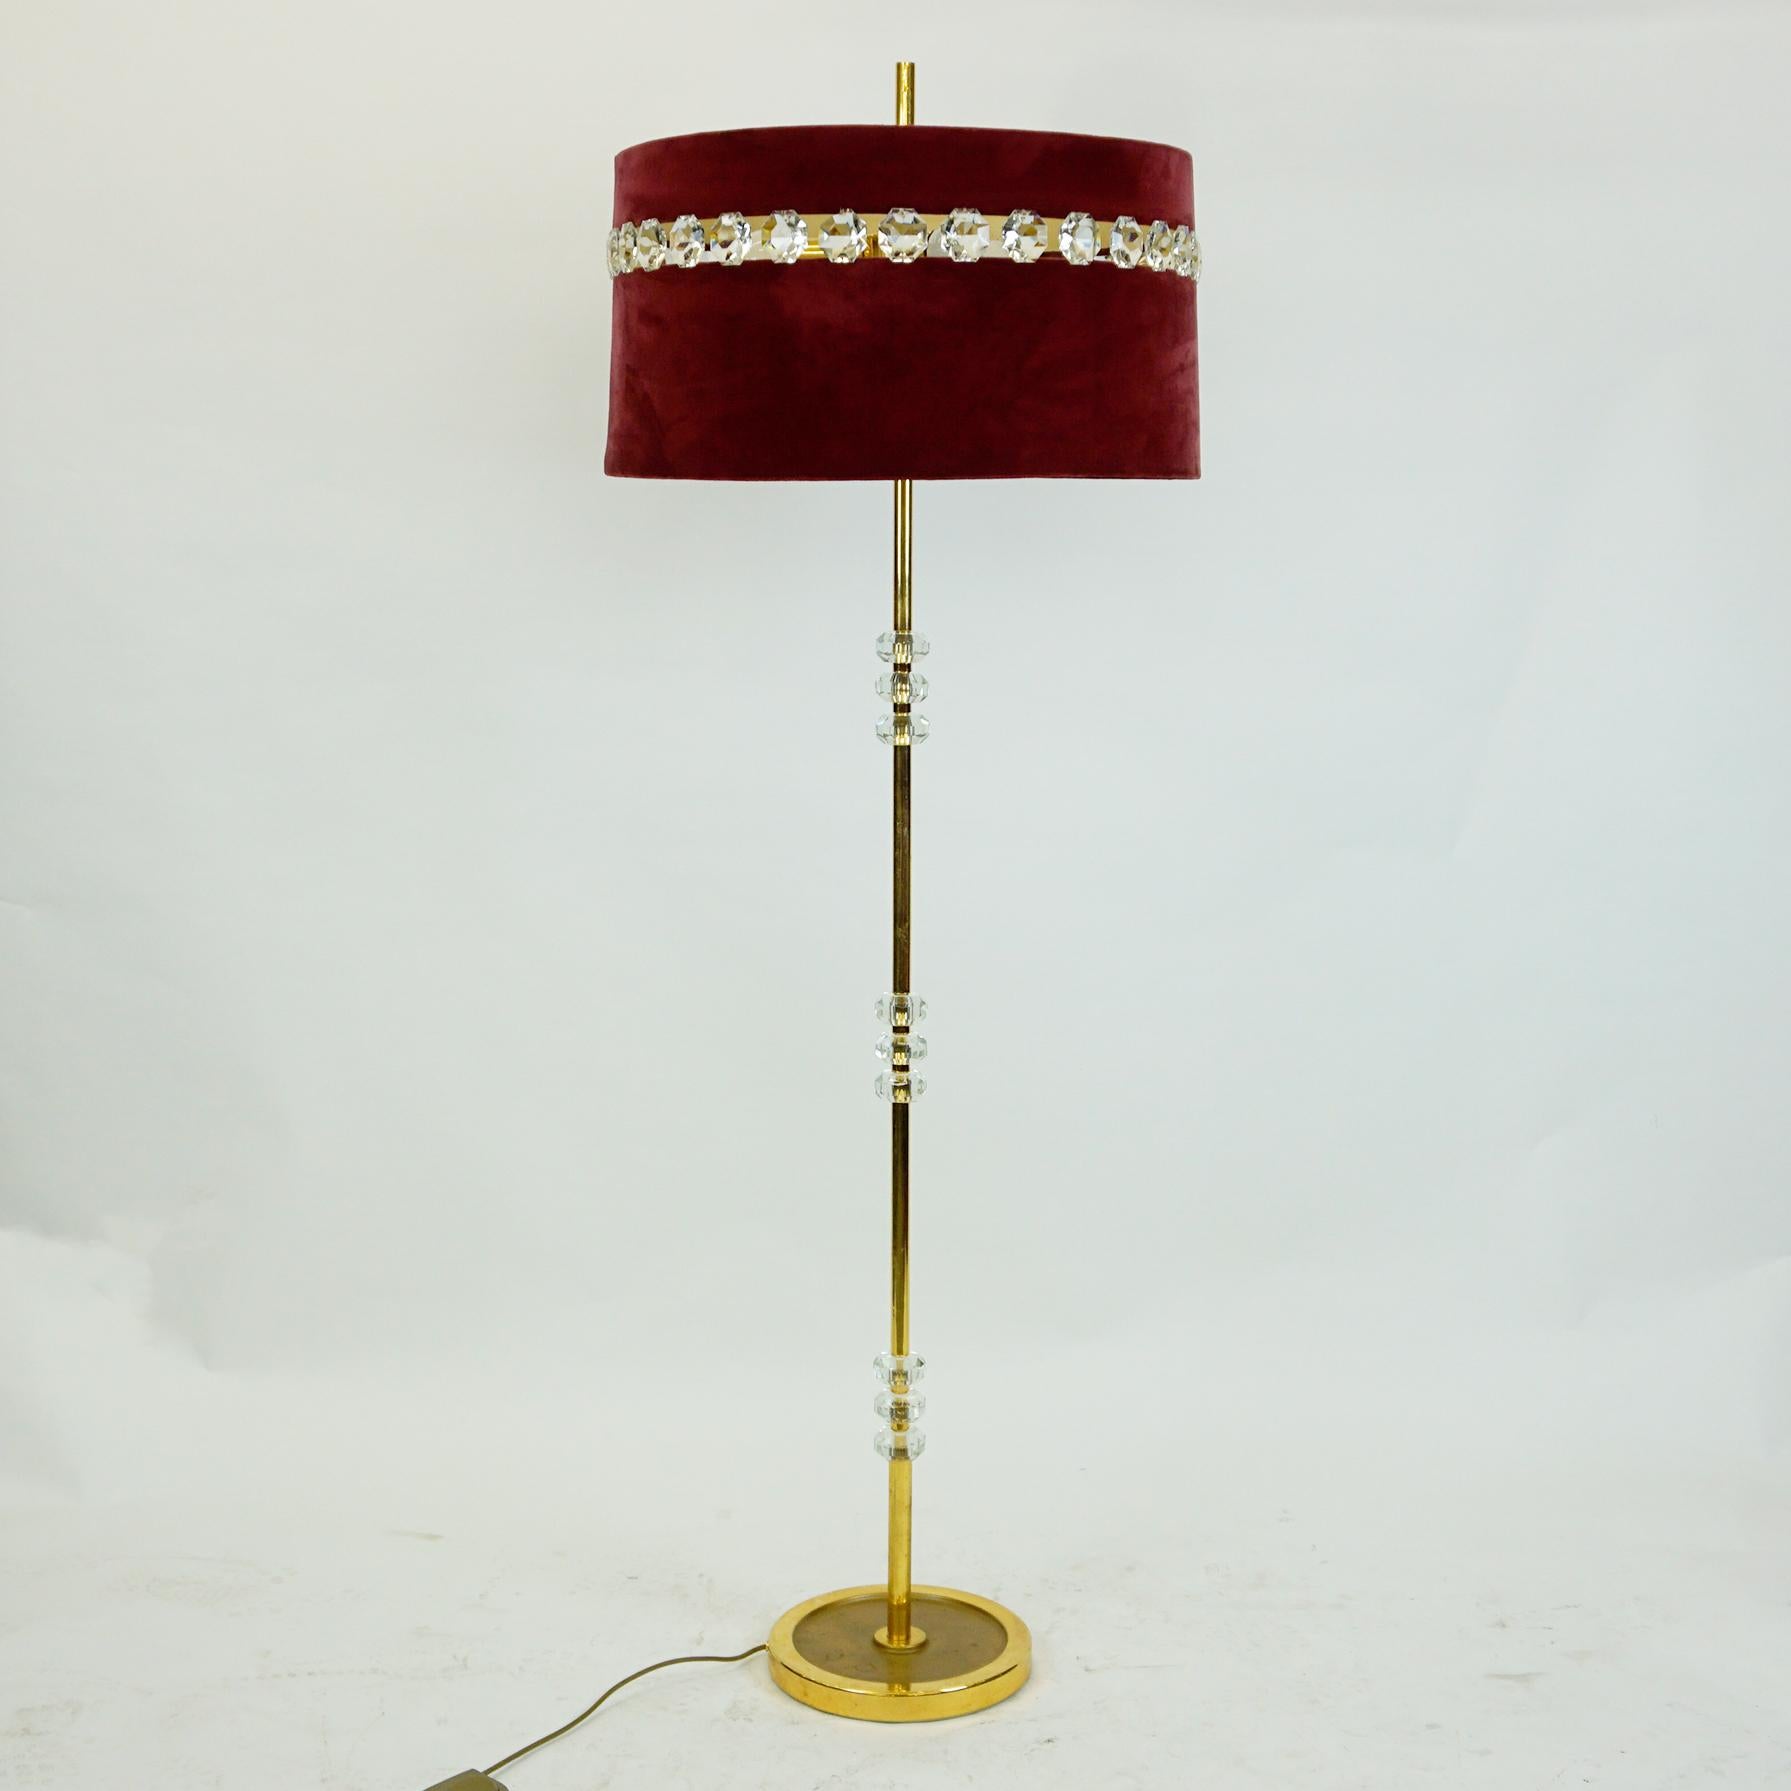 Hervorragendes Beispiel einer eleganten österreichischen Messing-Stehlampe aus der Mitte des Jahrhunderts, zugeschrieben J. & L. Lobmeyr, Wien. Sie besteht aus vergoldetem Messing mit integrierten Kristallglaselementen, kombiniert mit detaillierten